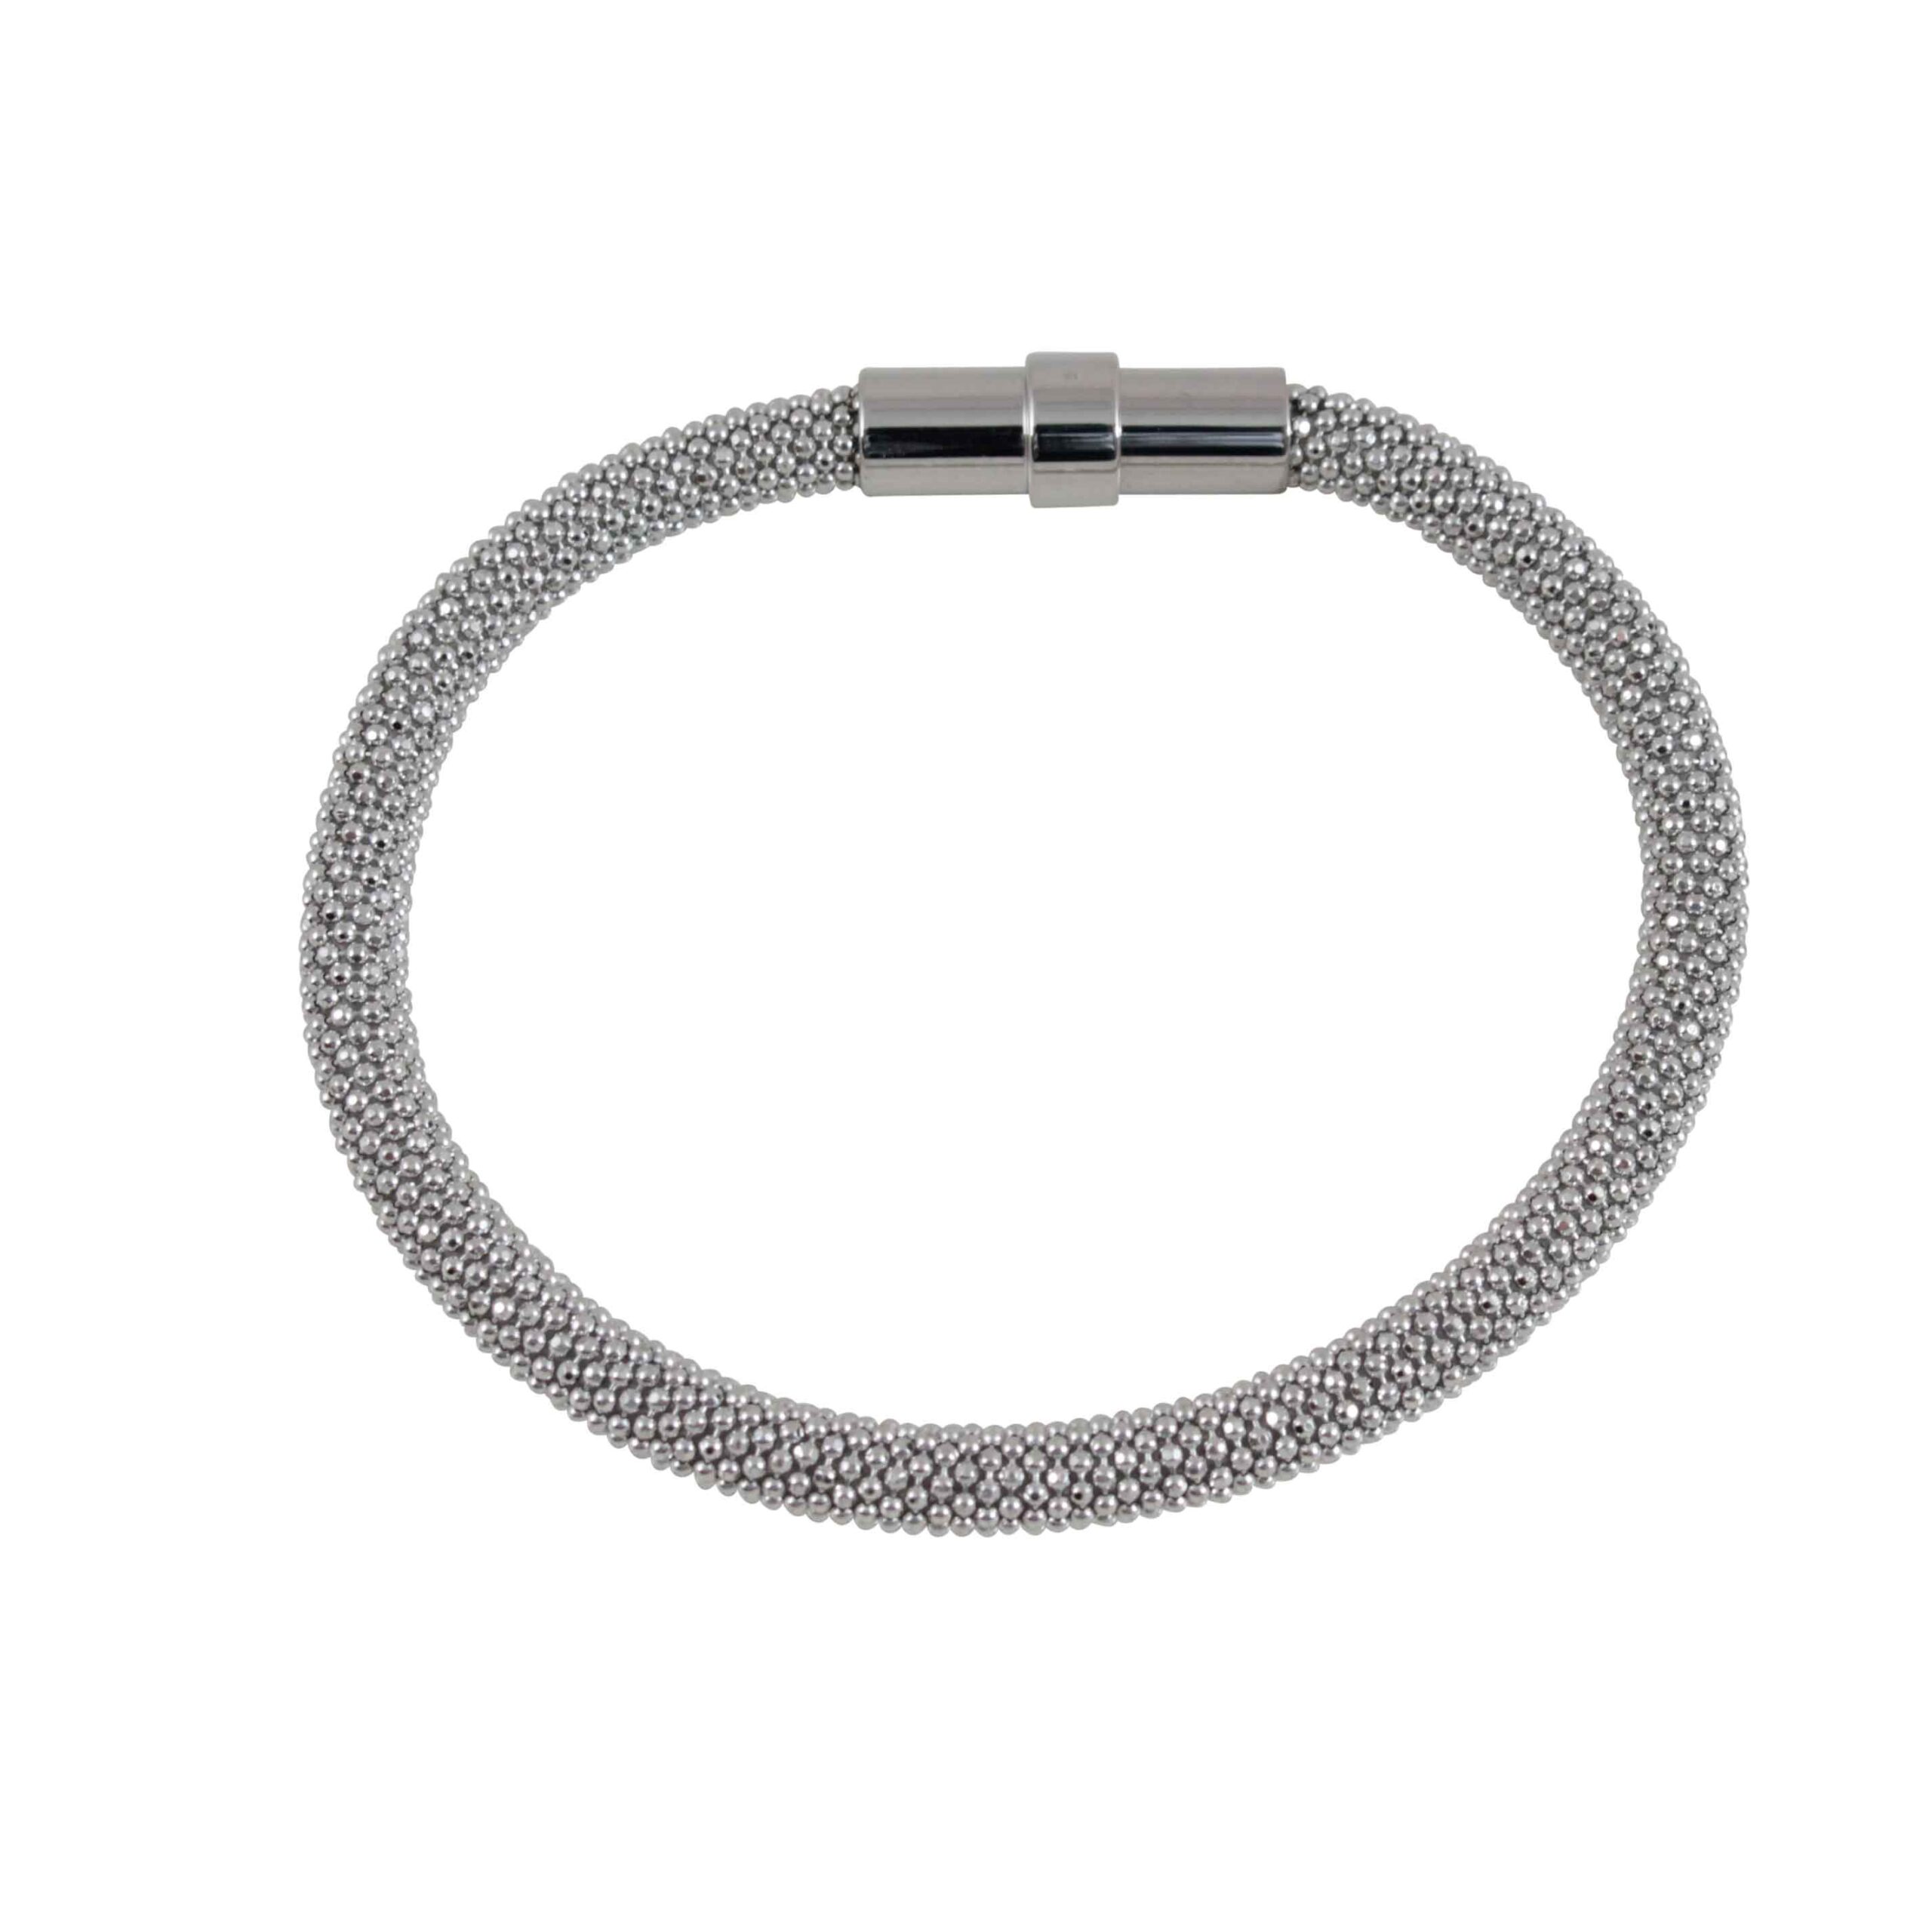 Armband Silber FS-A27-5 von elmare.ch | Silberarmbänder